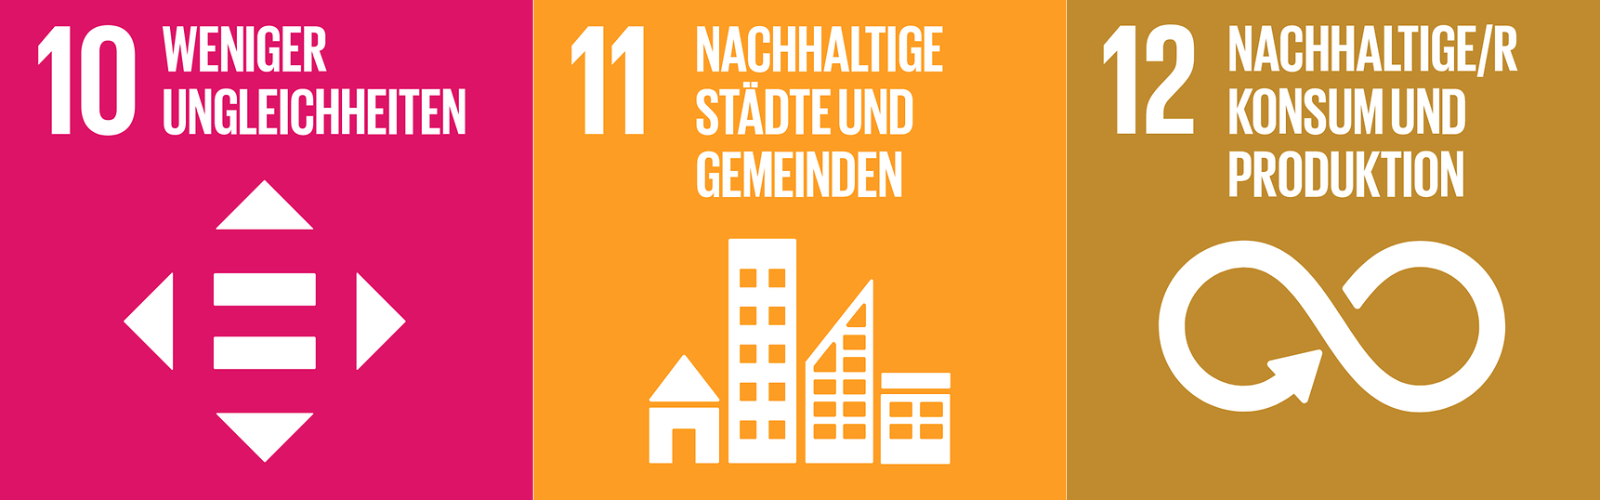 SDG 10: Weniger Ungleichheiten, SDG 11: Nachhaltige Städte und Gemeinden, SDG 12: Nachhaltige/r Konsum und Produktion